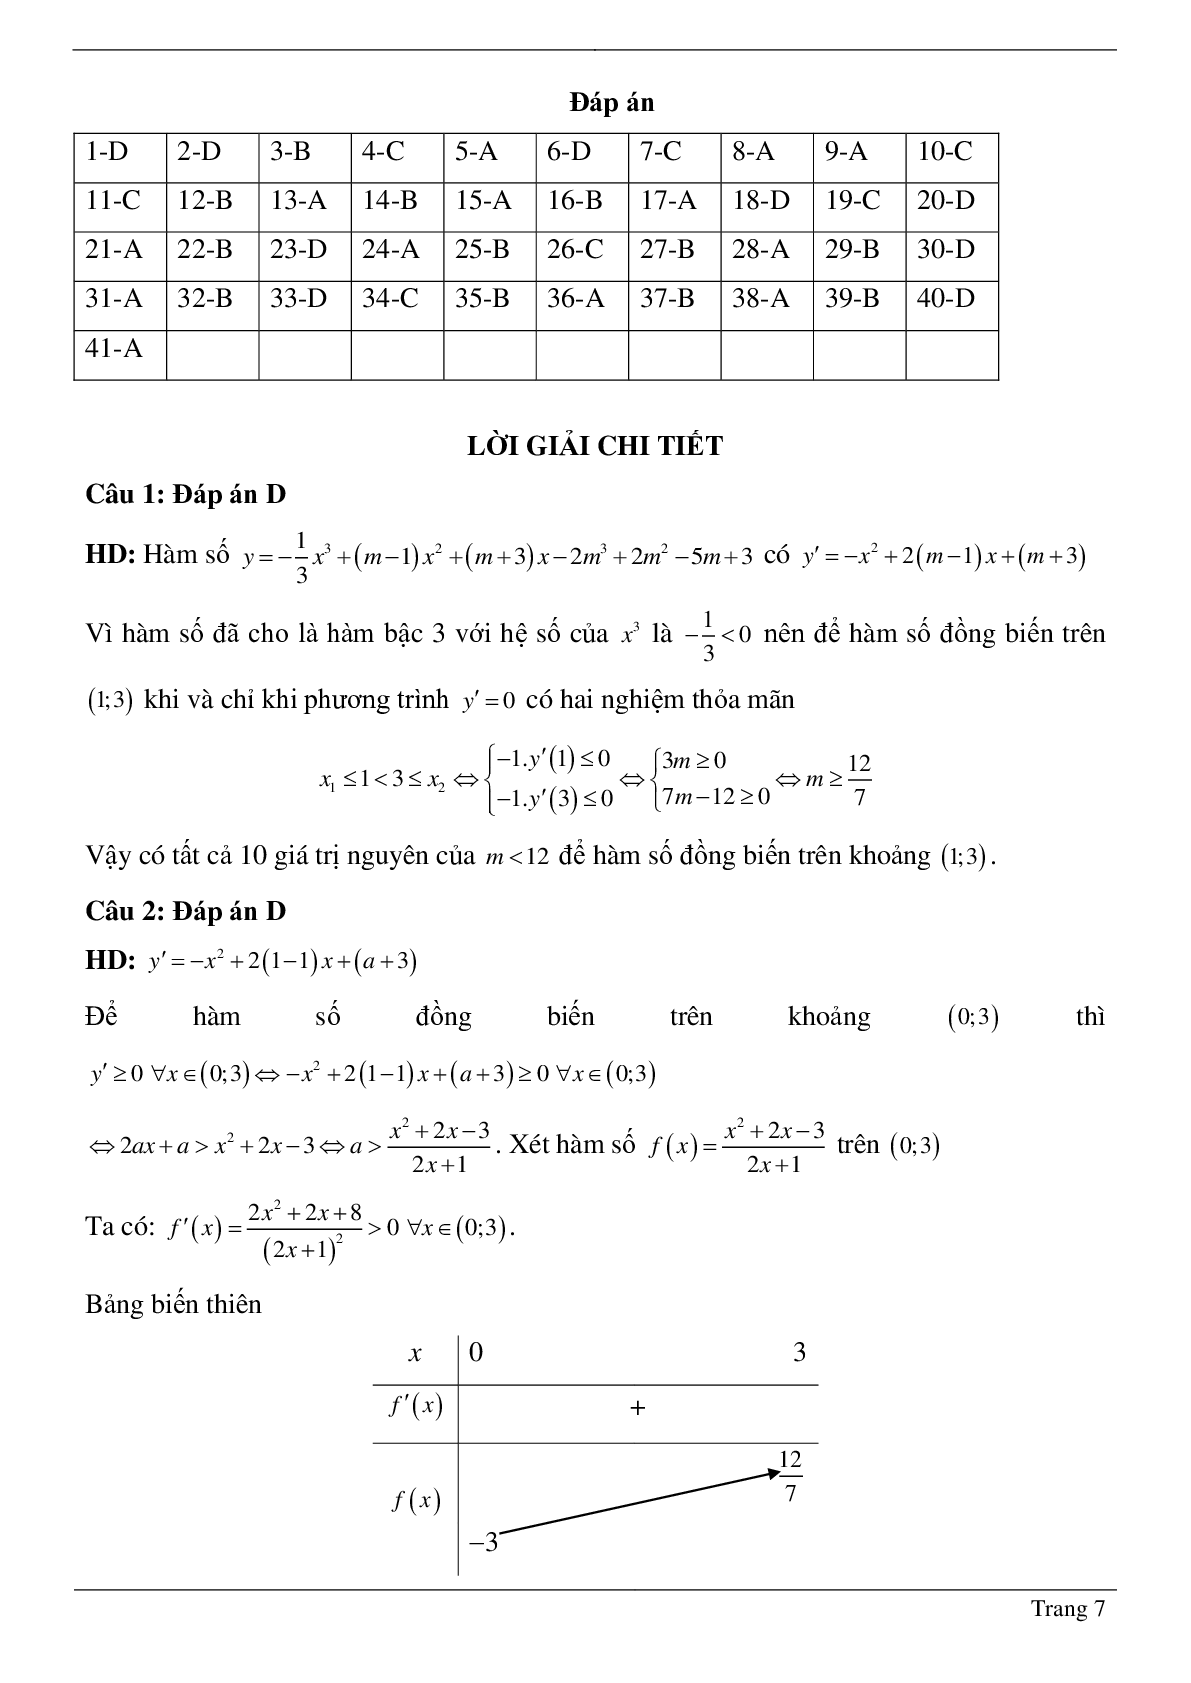 Tìm tham số M để hàm số bậc ba đồng biến, nghịch biến trên khoảng K cho trước (trang 7)